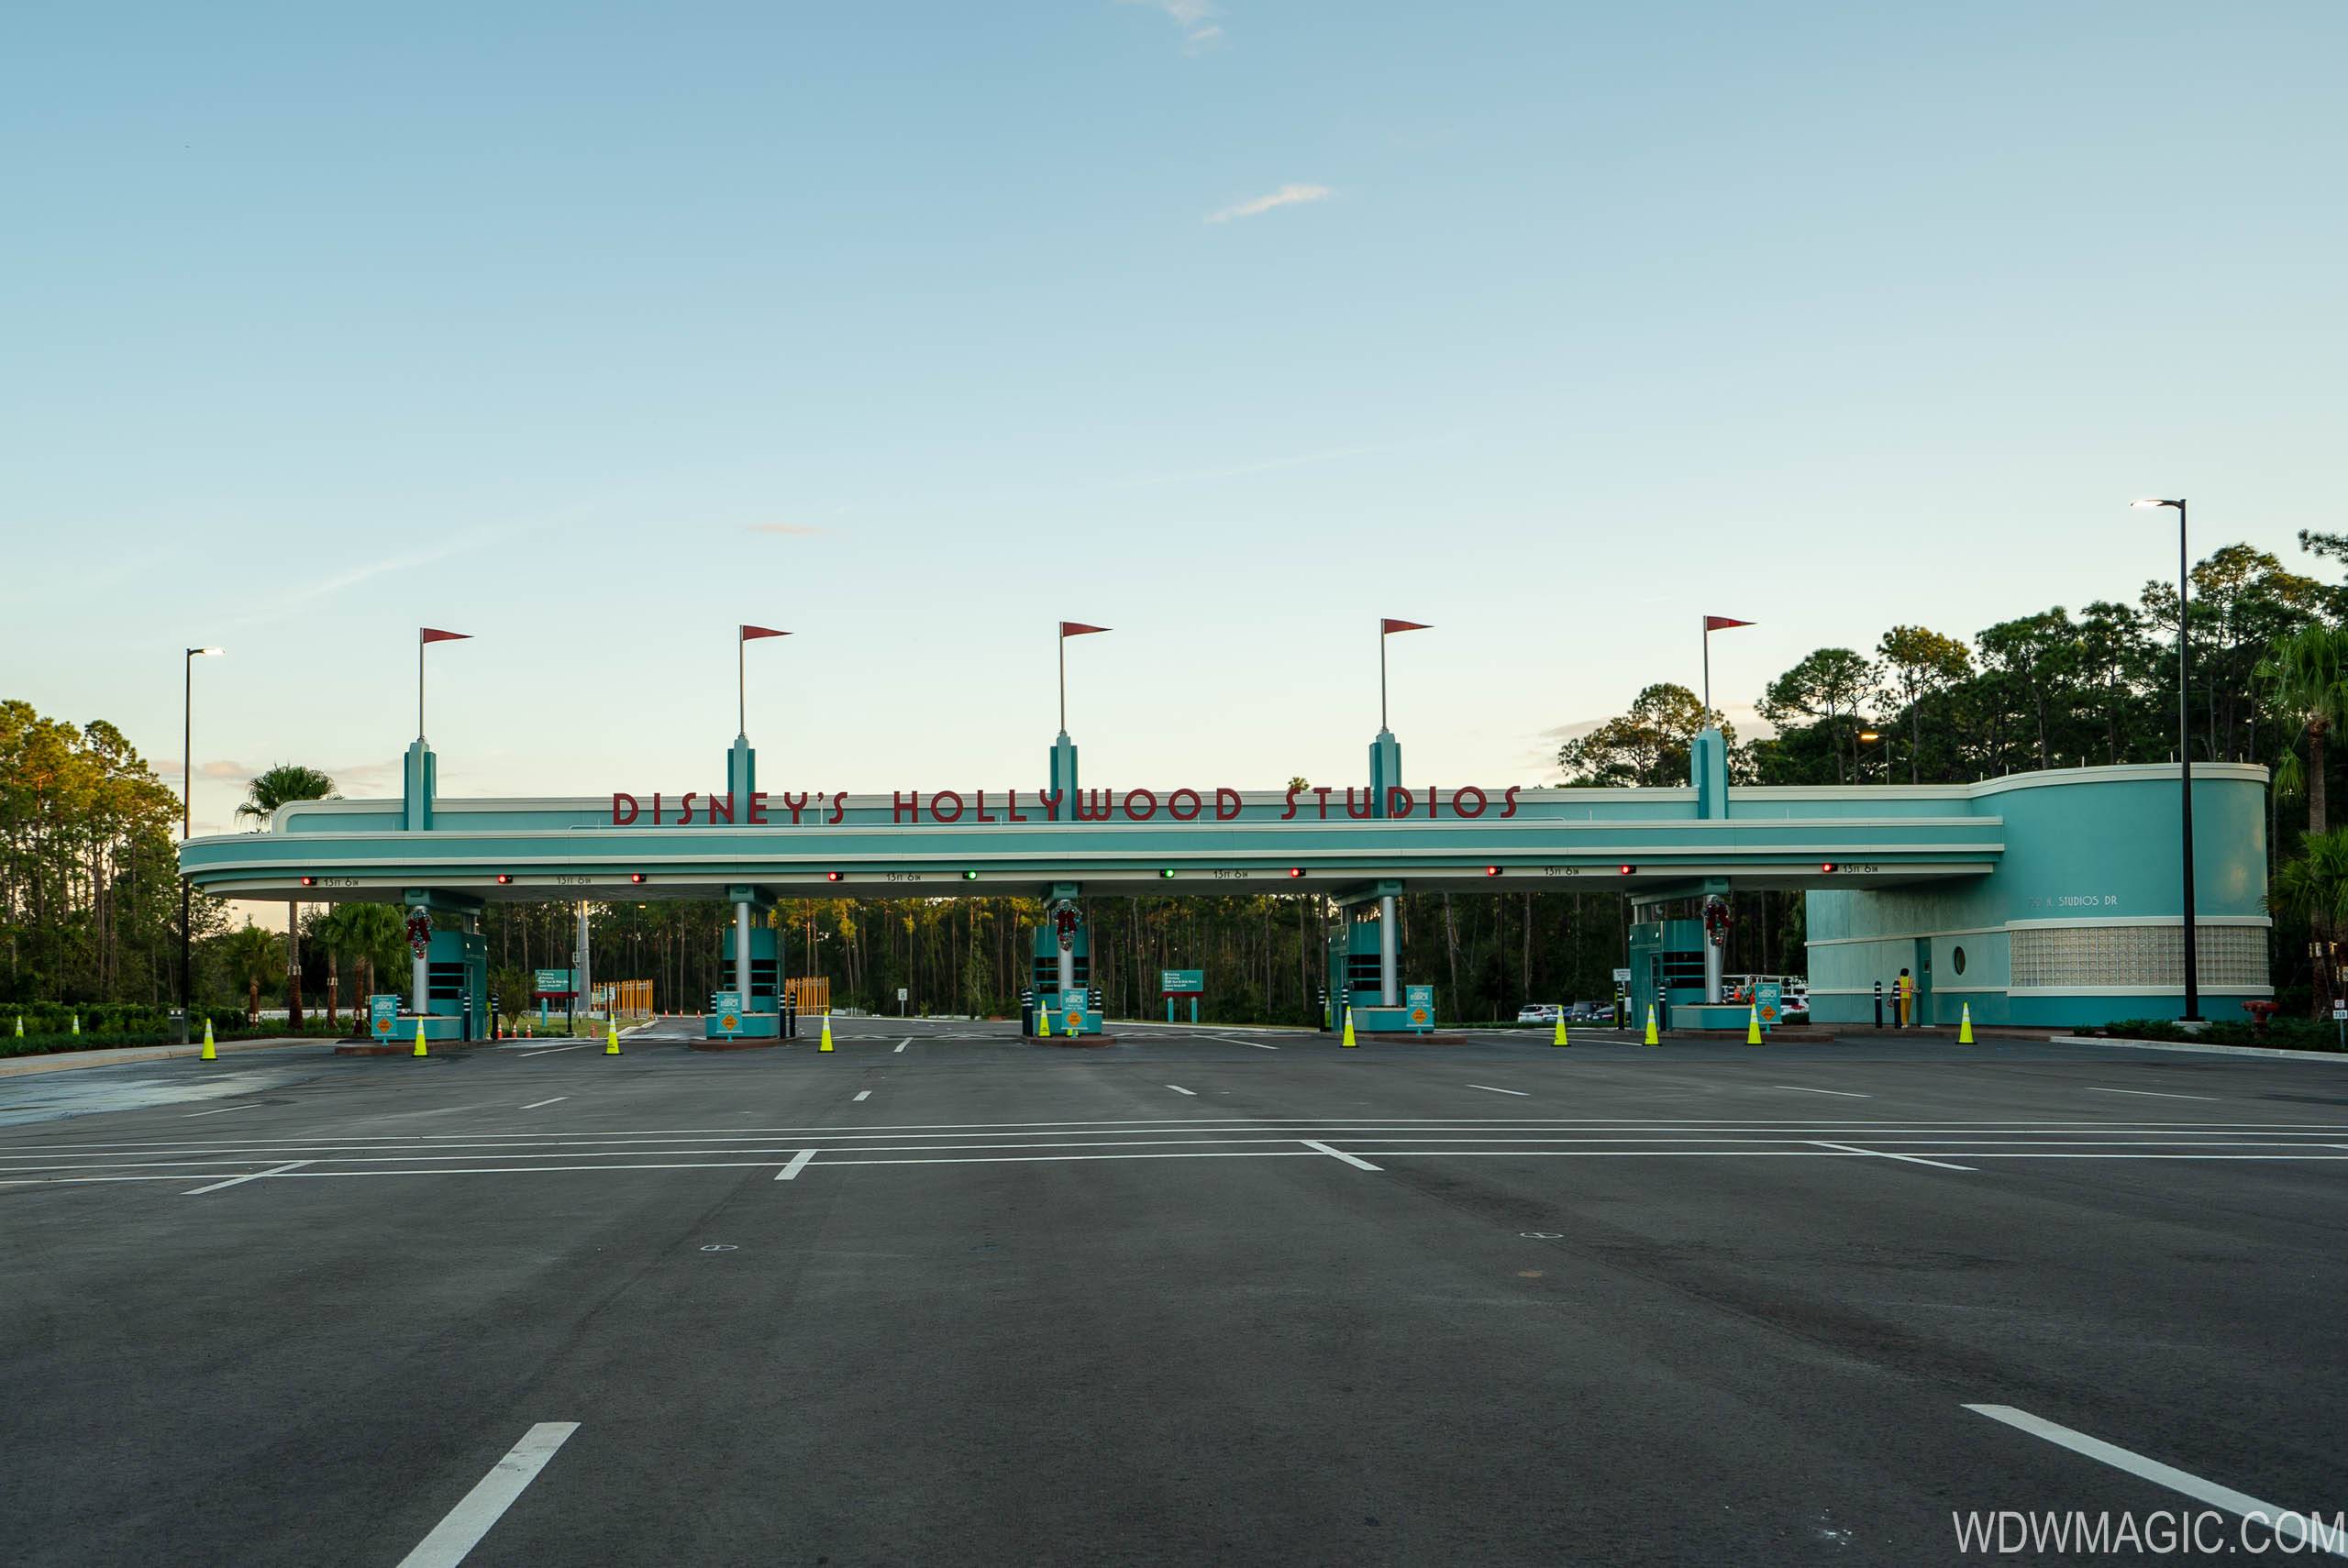 New auto-plaza at Disney's Hollywood Studios